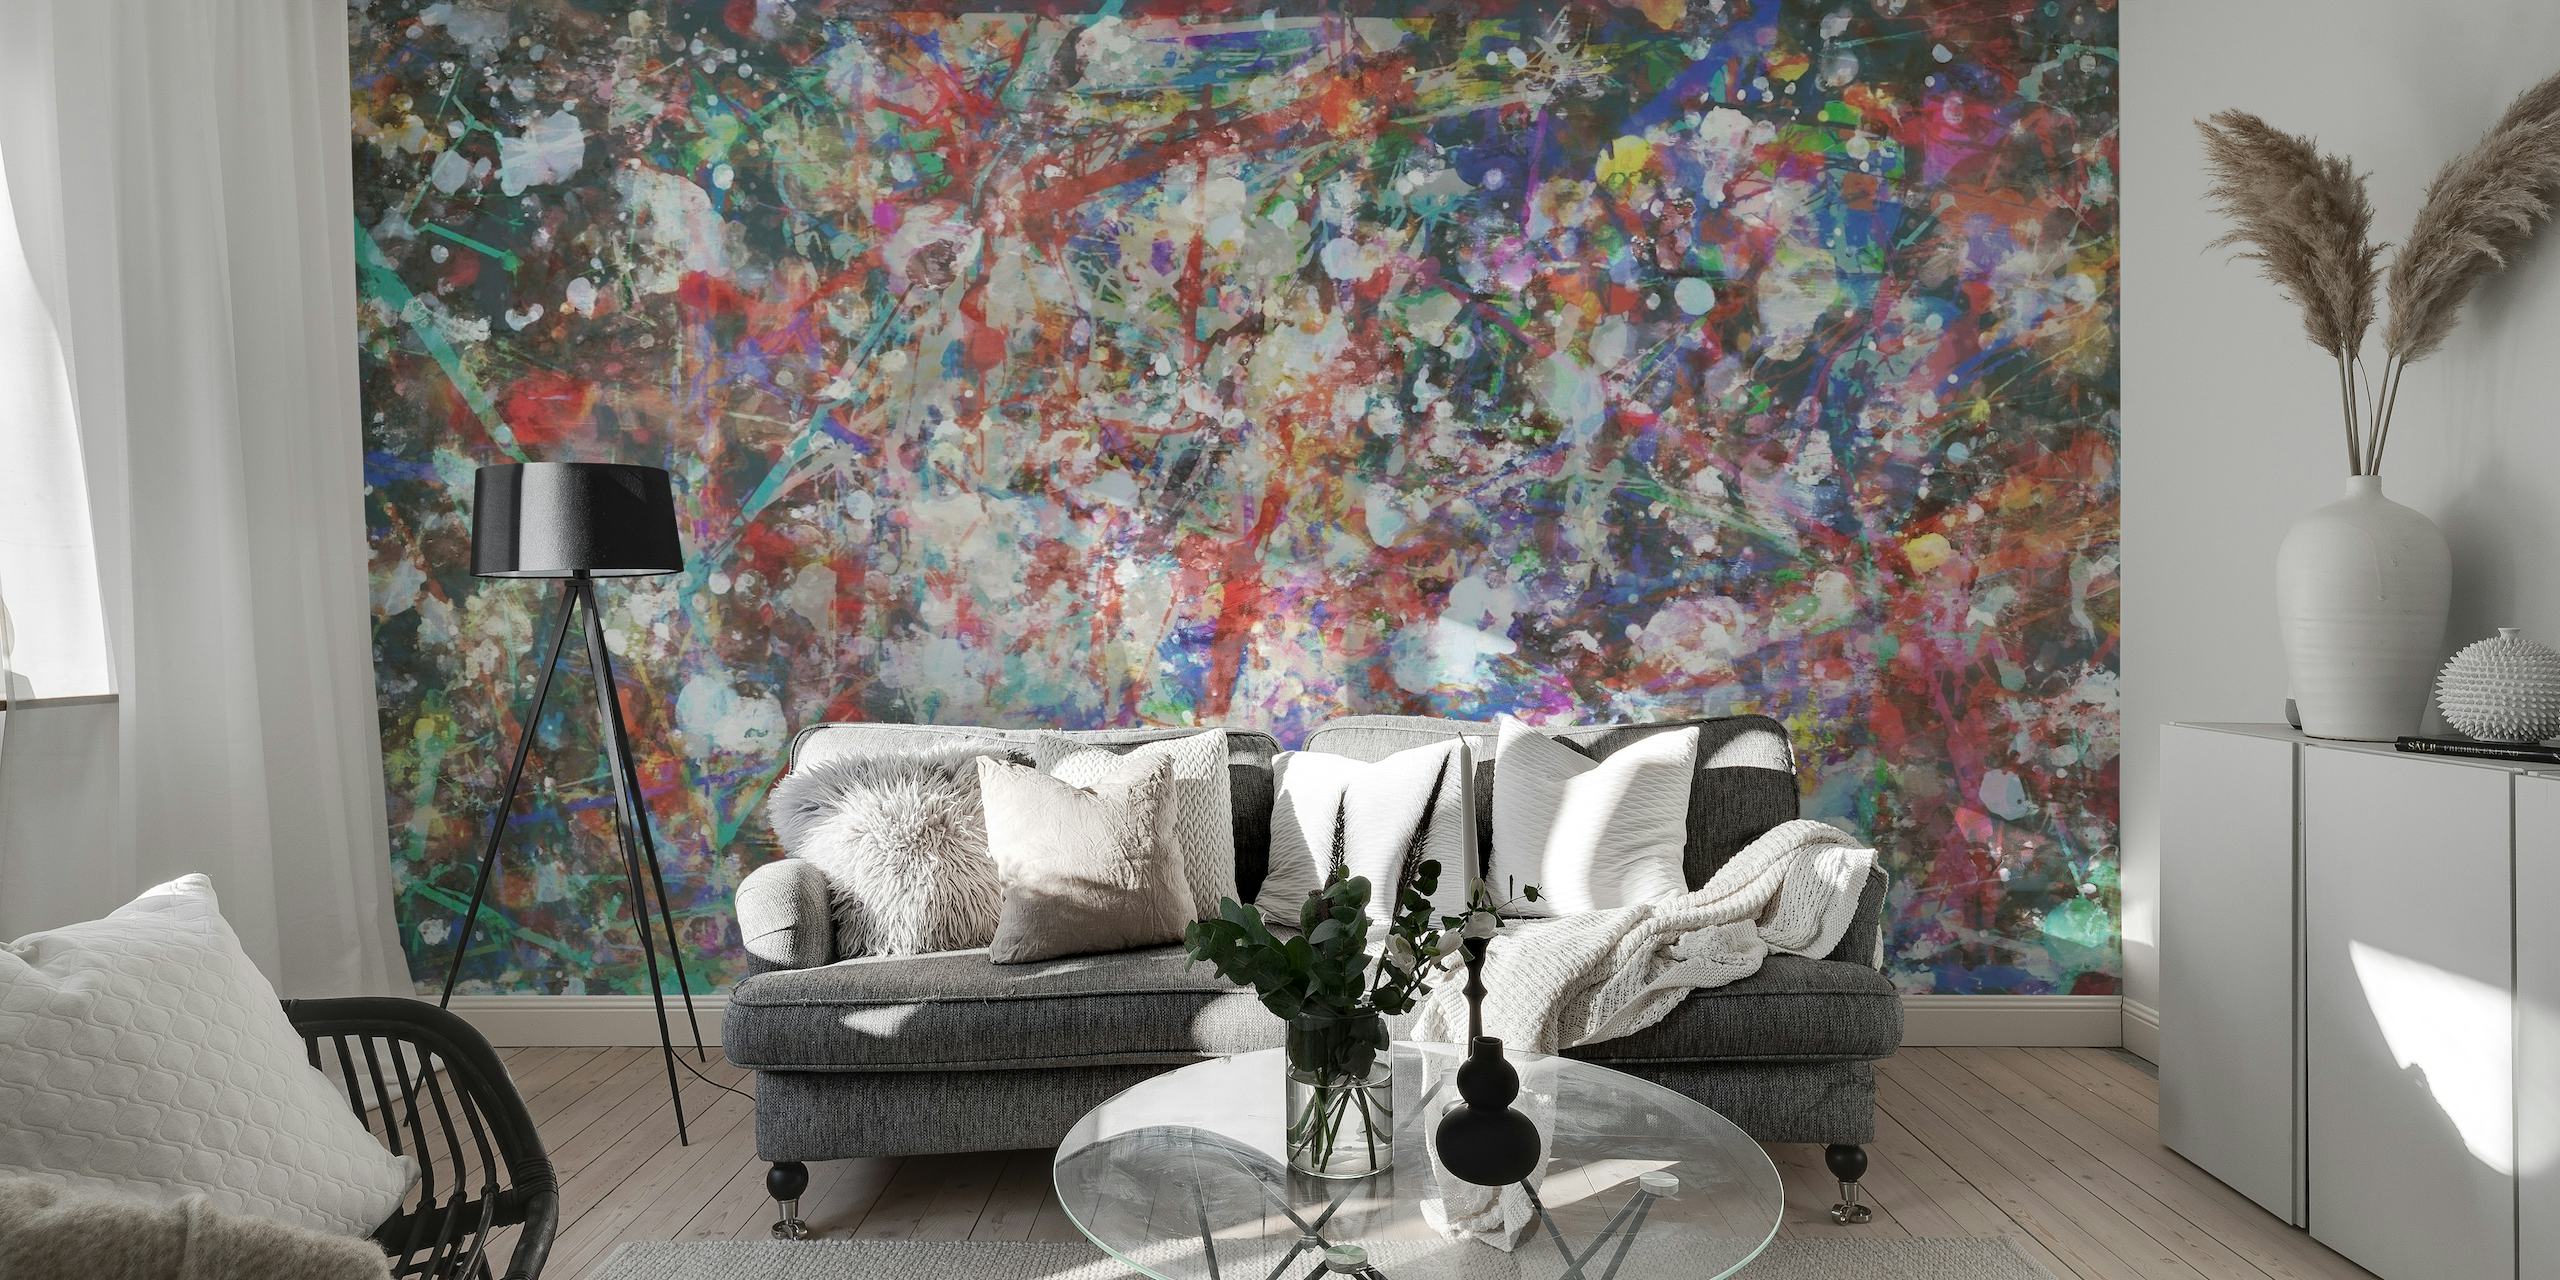 Abstract fotobehang met een kleurrijke reeks penseelstreken en verfspatten